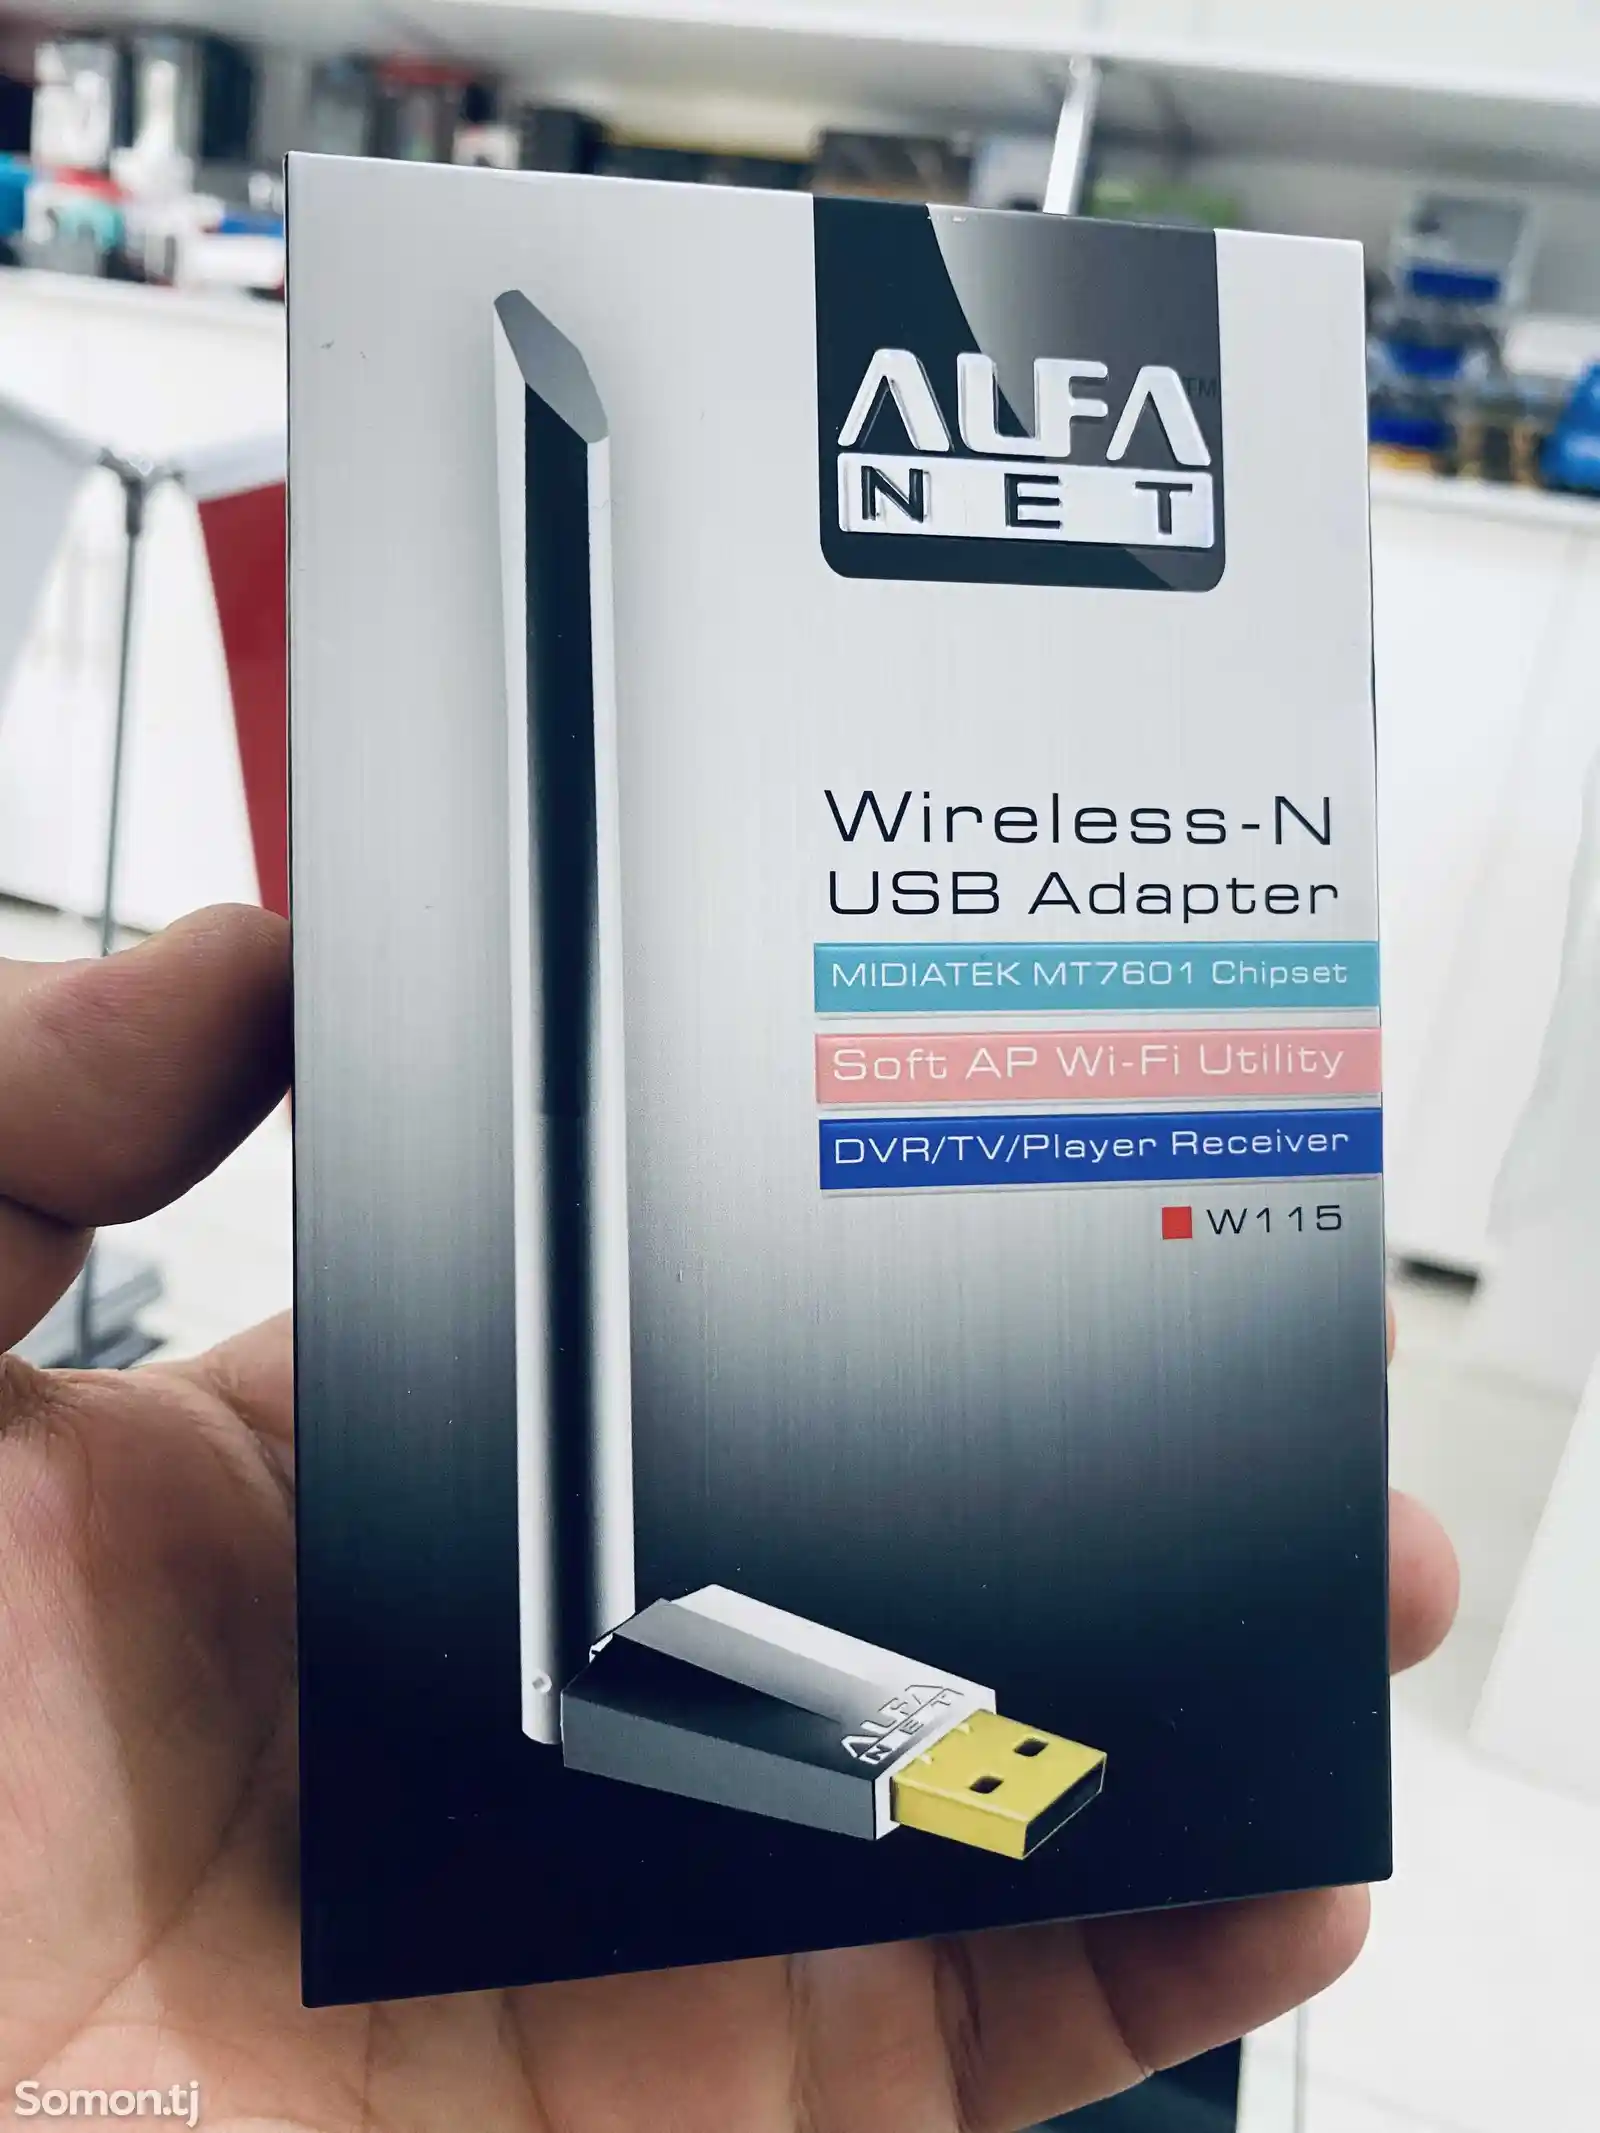 Wi-Fi адаптер ALFA-W115